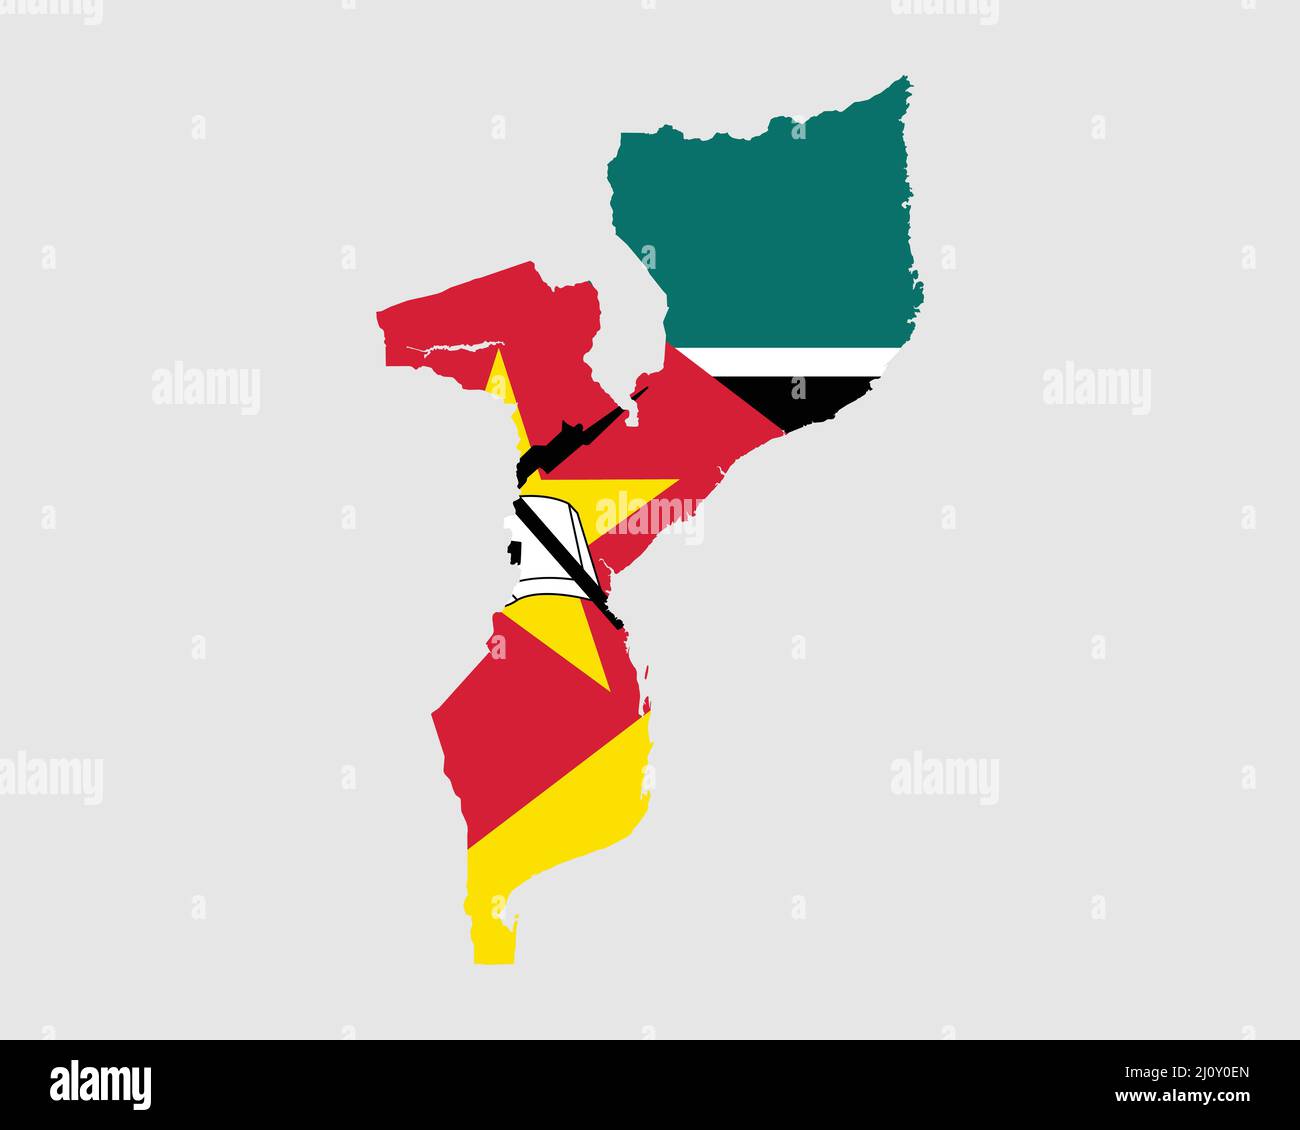 Mappa della bandiera del Mozambico. Mappa della Repubblica del Mozambico con la bandiera del paese mozambicano. Illustrazione vettoriale. Illustrazione Vettoriale